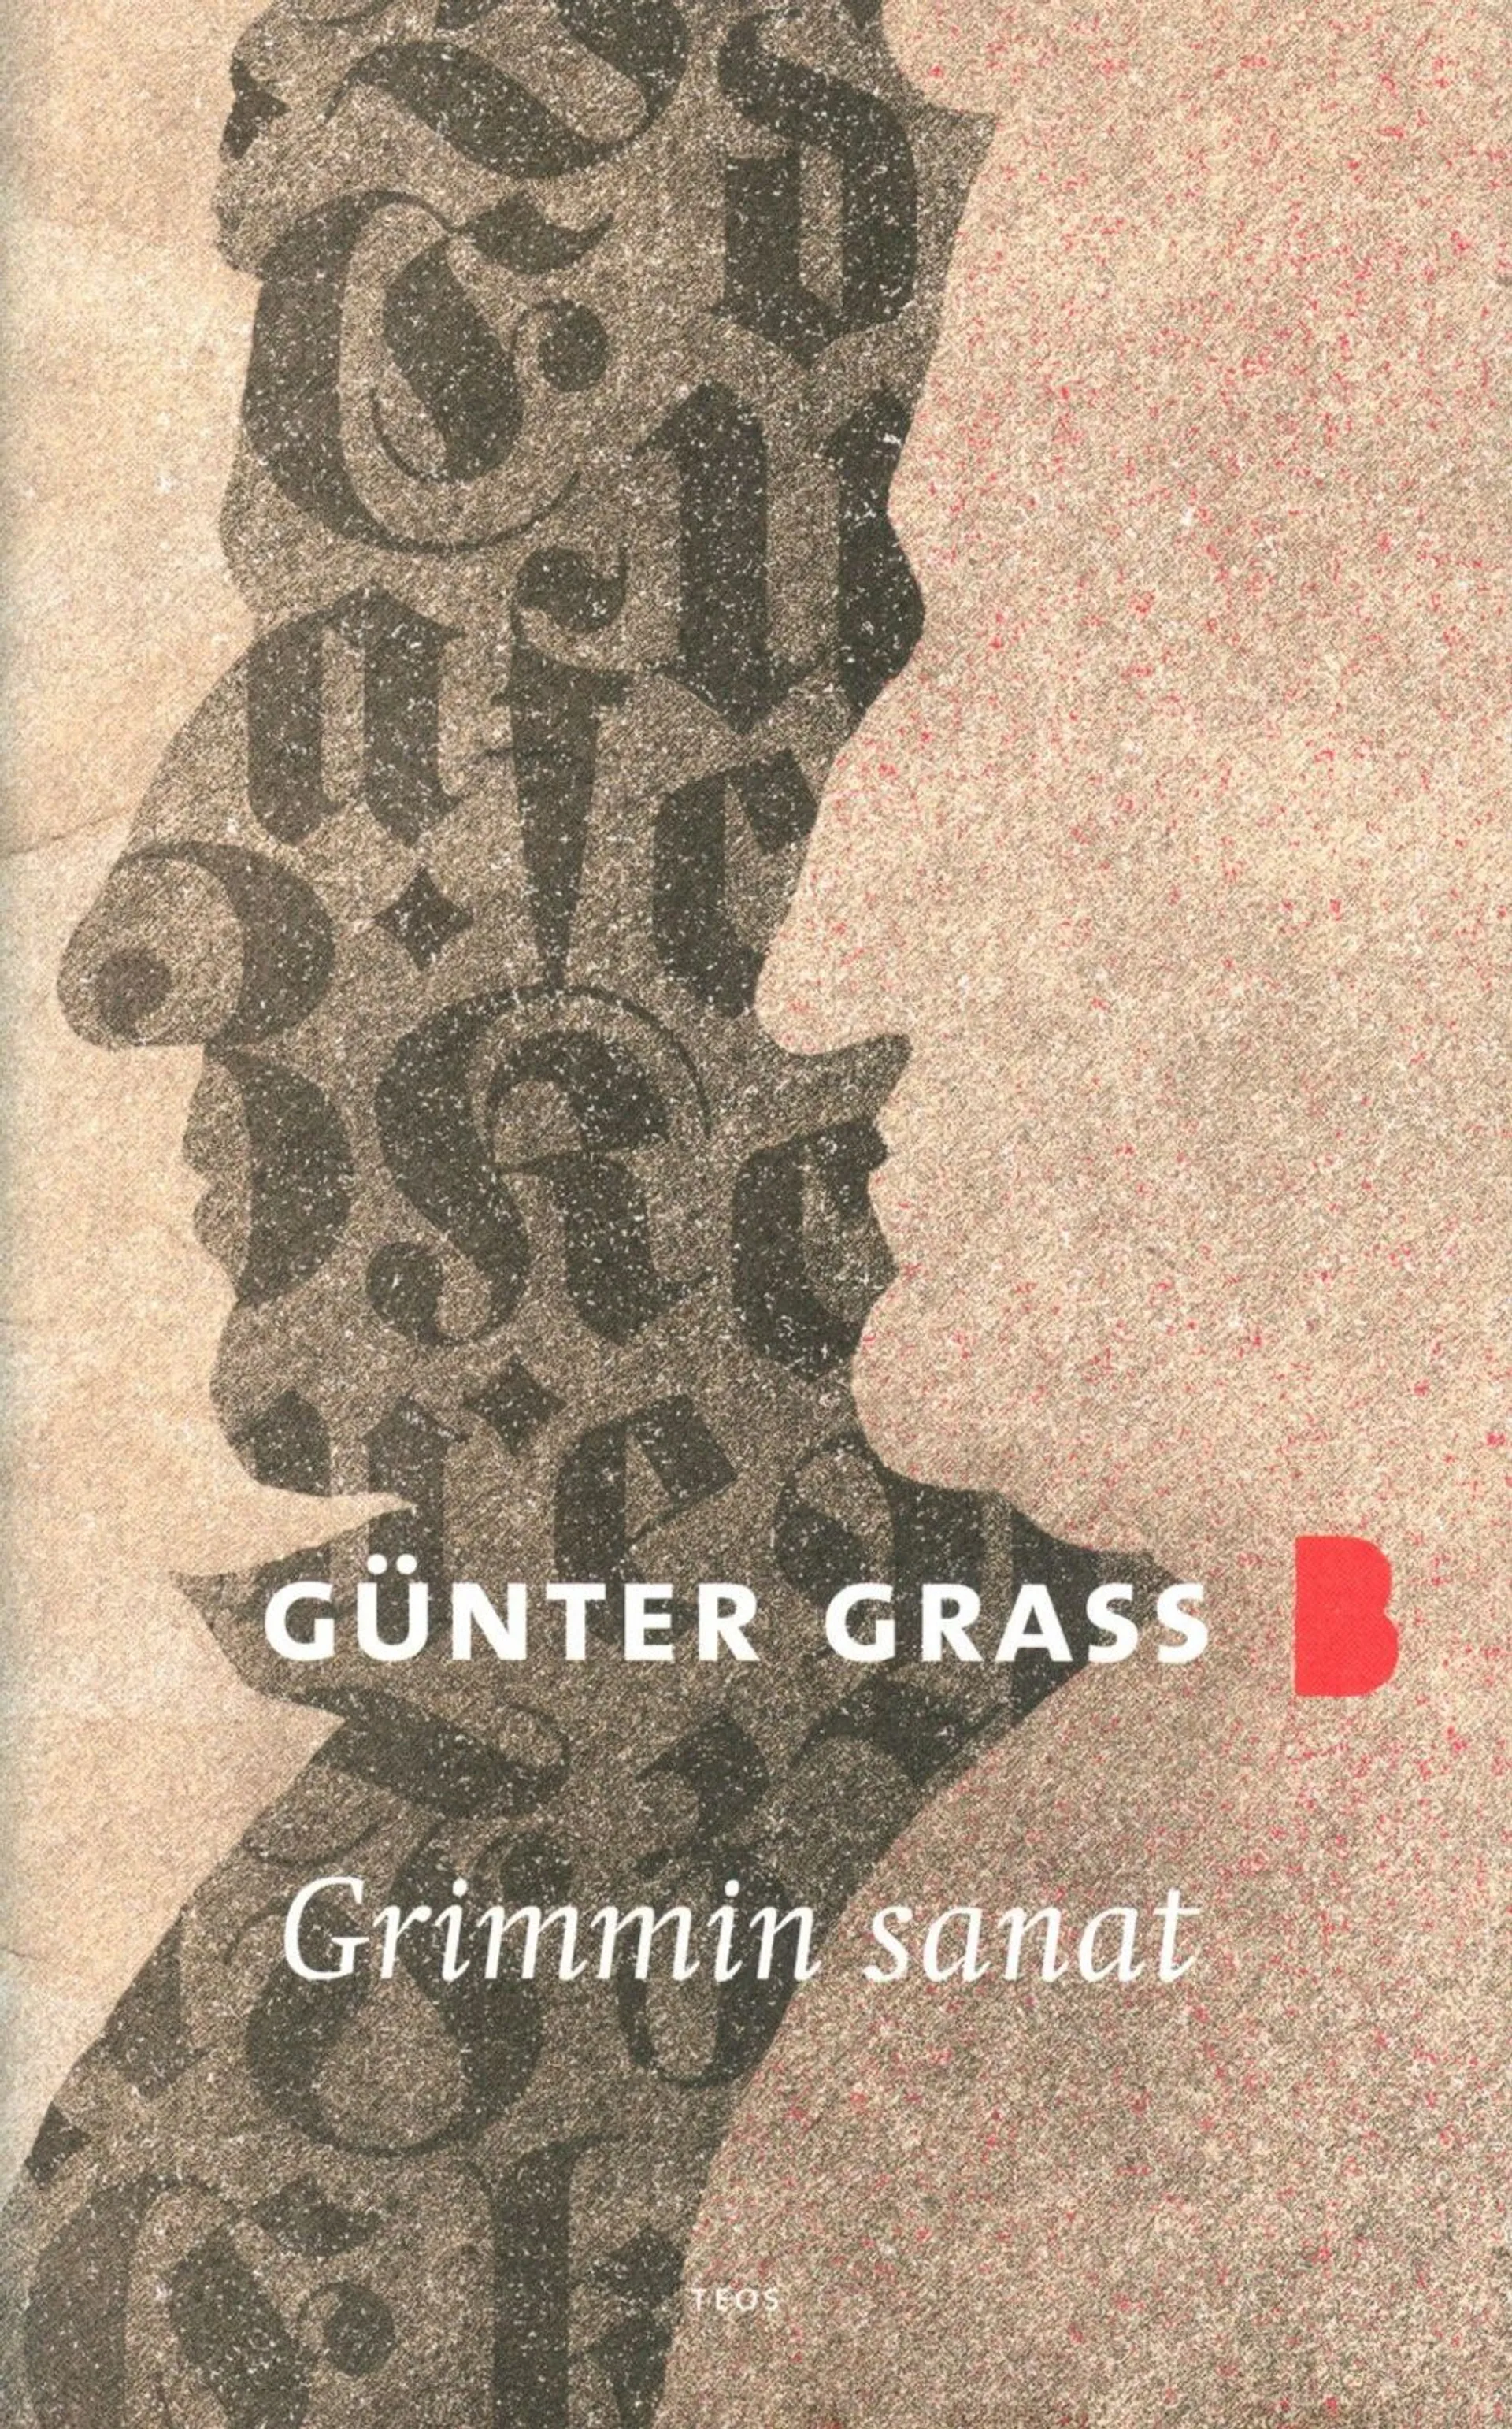 Grass, Grimmin sanat